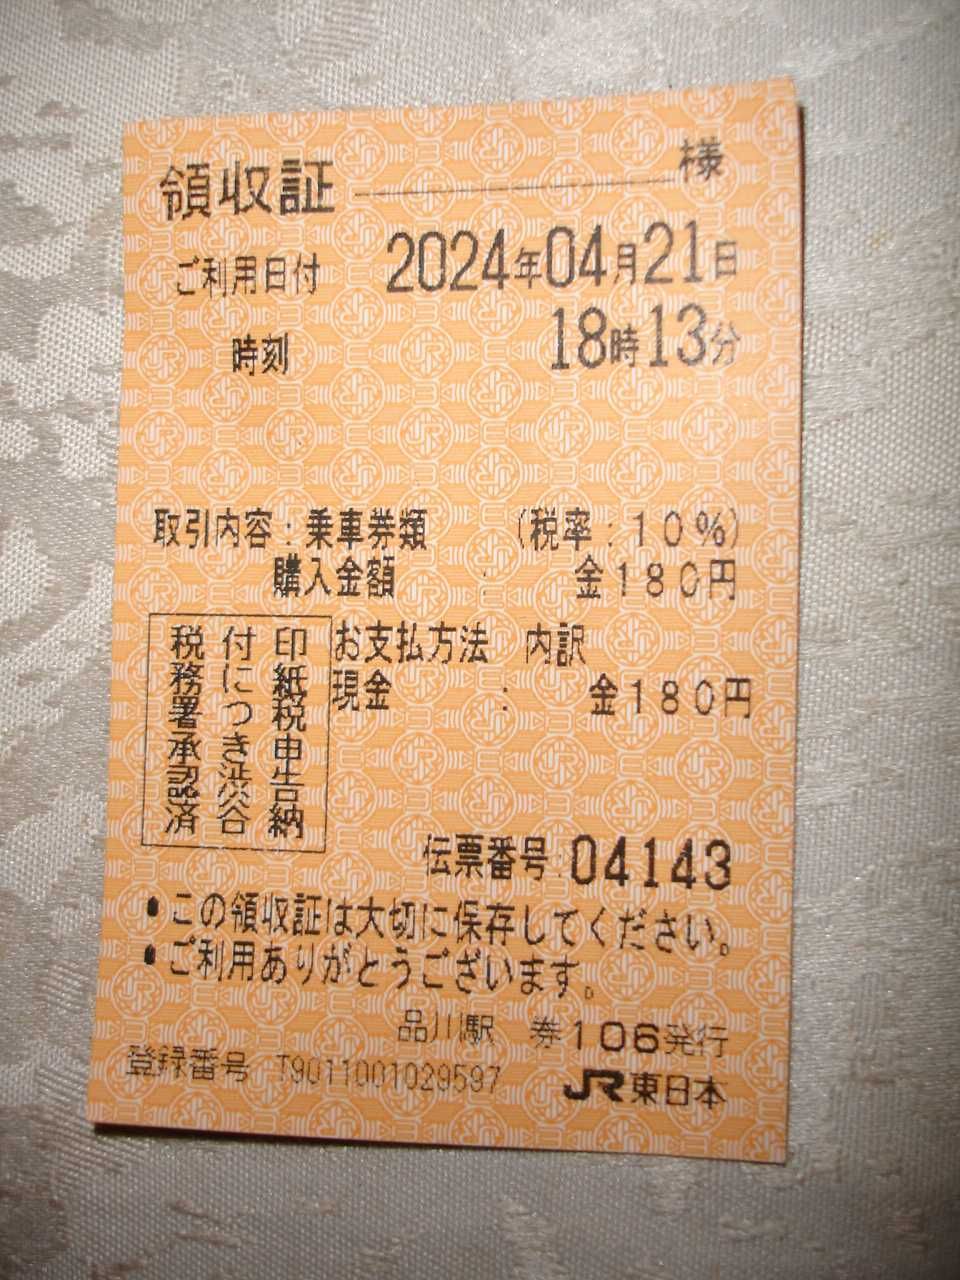 КВИТАНЦІЯ/вхідний квиток у МЕТРО Токіо з автомата з продажу квитків